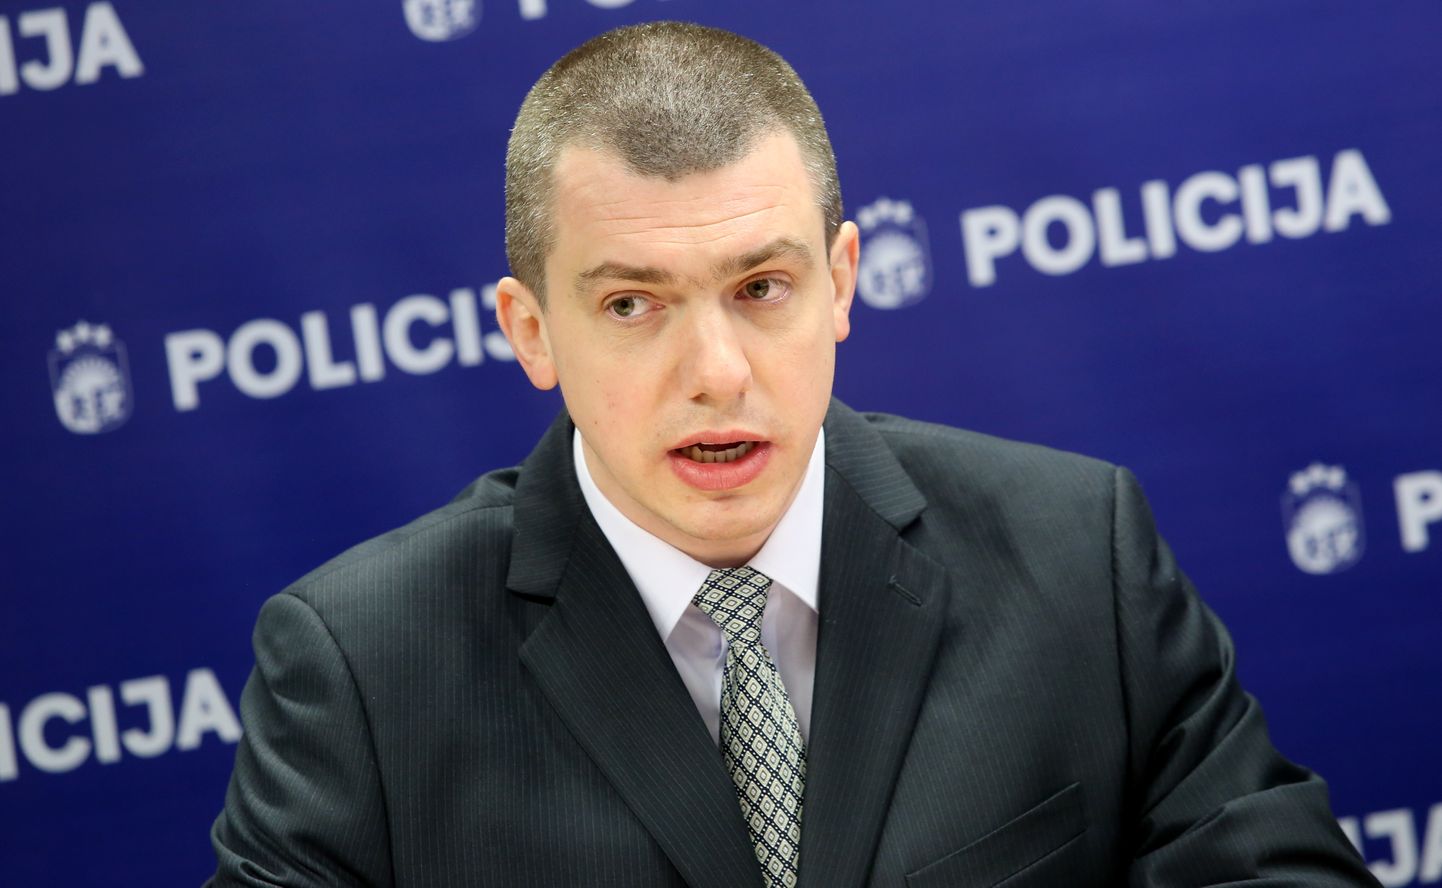 Valsts policijas Dzimumnoziegumu apkarošanas nodaļas priekšnieks Oļegs Lavčinovskis piedalās preses konferencē par visbiežākajiem dzimumnoziegumu veidiem Latvijā.